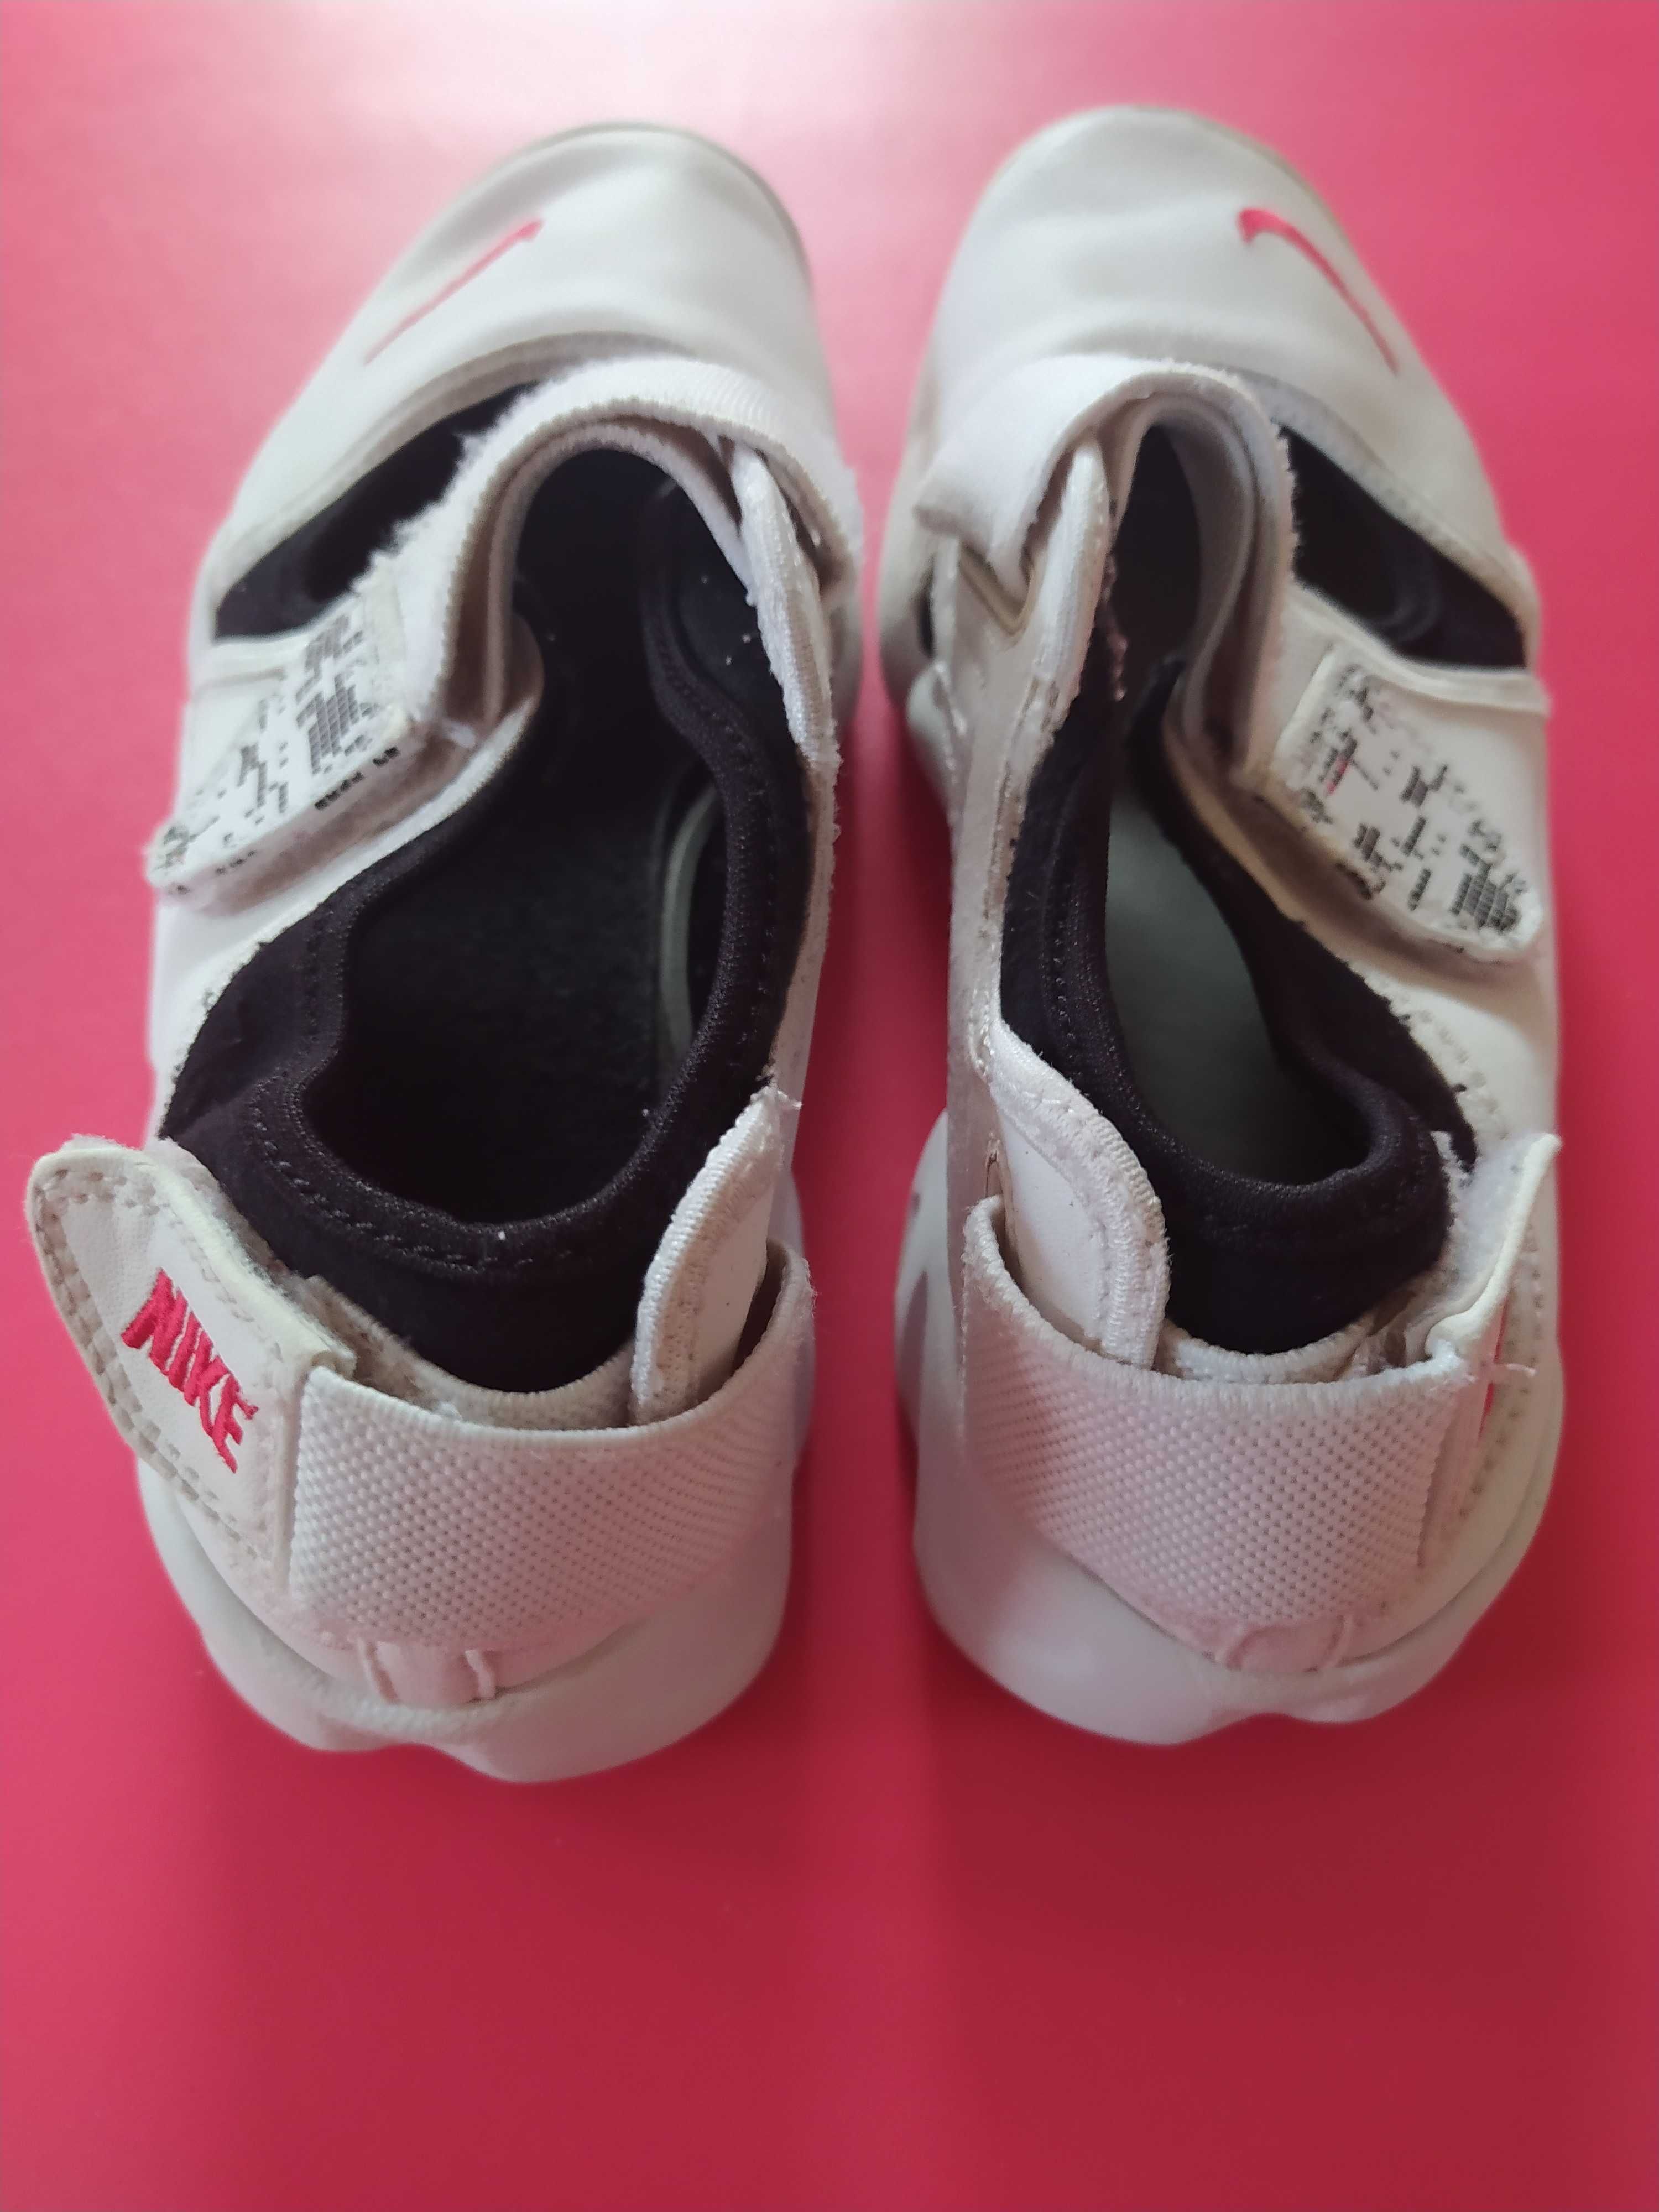 Baleriny Nike, 34/35, białe, rzepy.